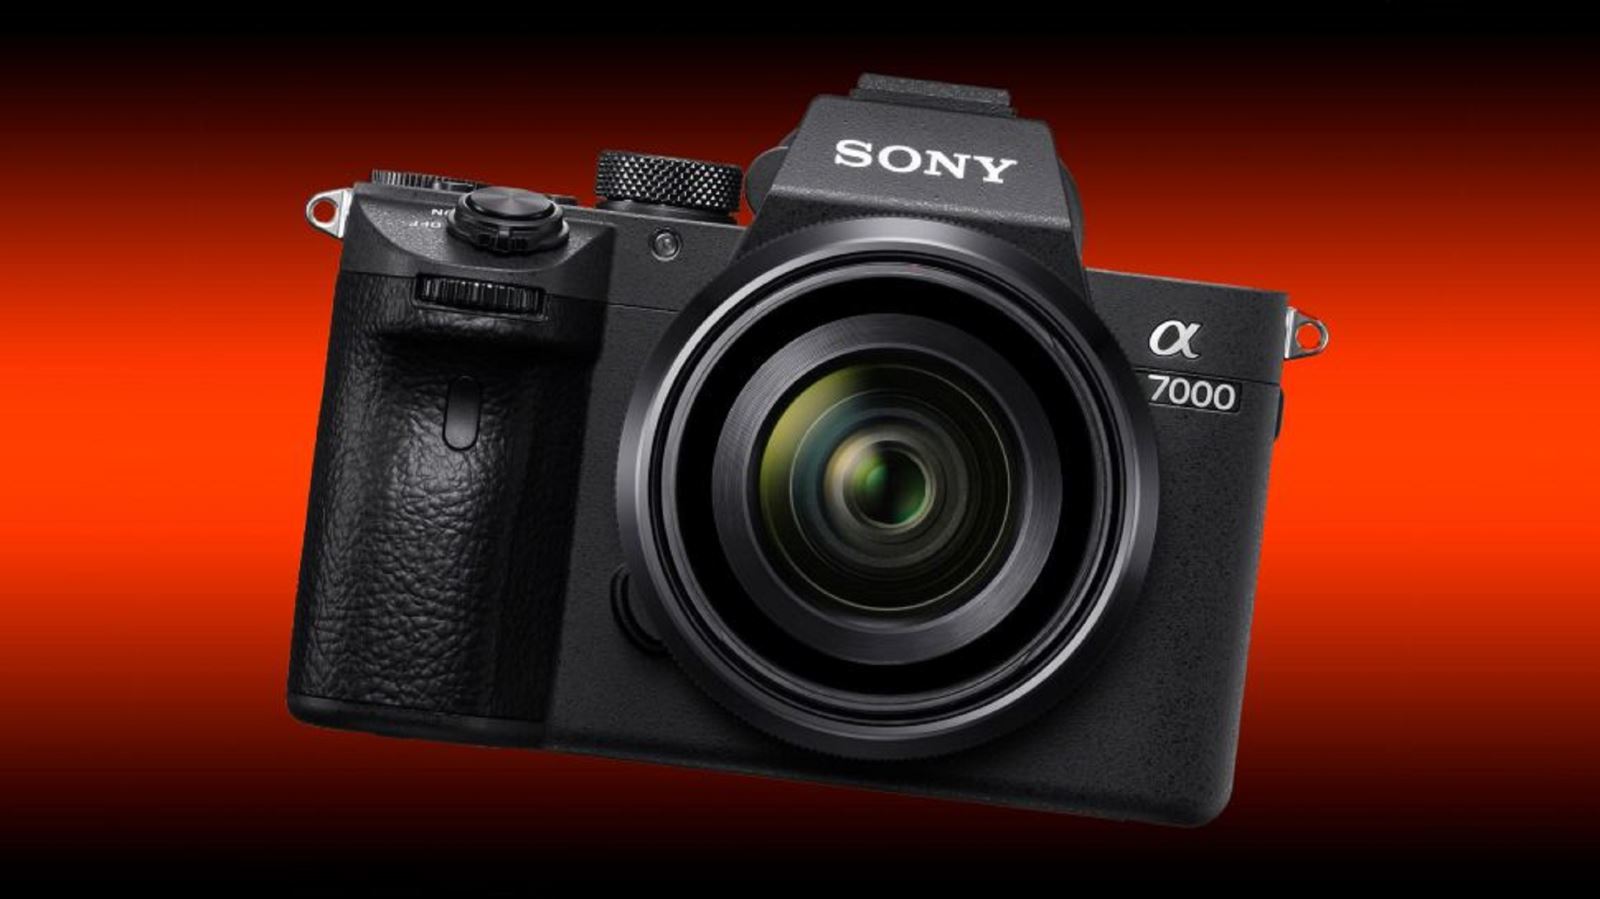 Rò rỉ thông số kỹ thuật máy ảnh Sony A7000